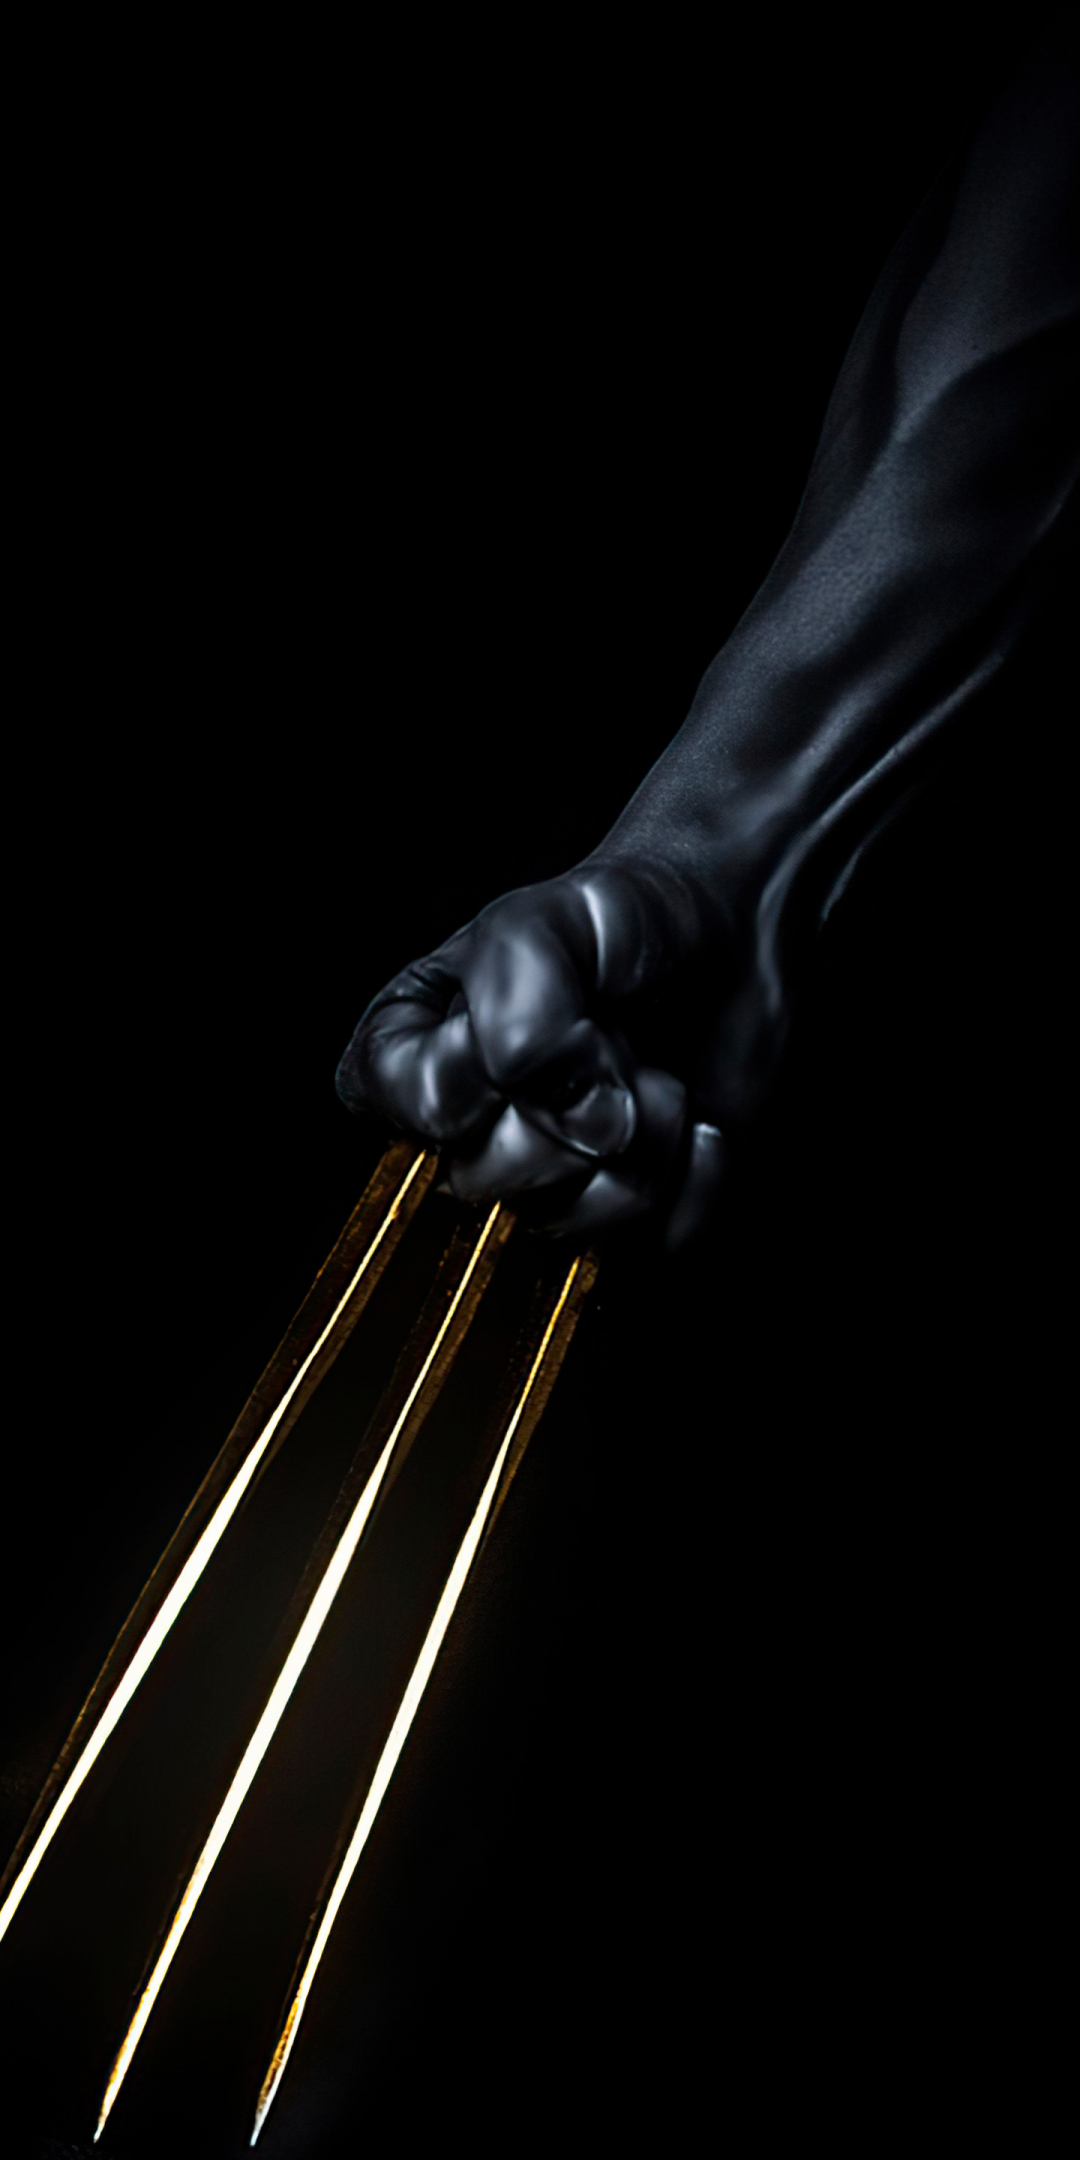 Wolverine gold claws, dark, 1080x2160 wallpaper